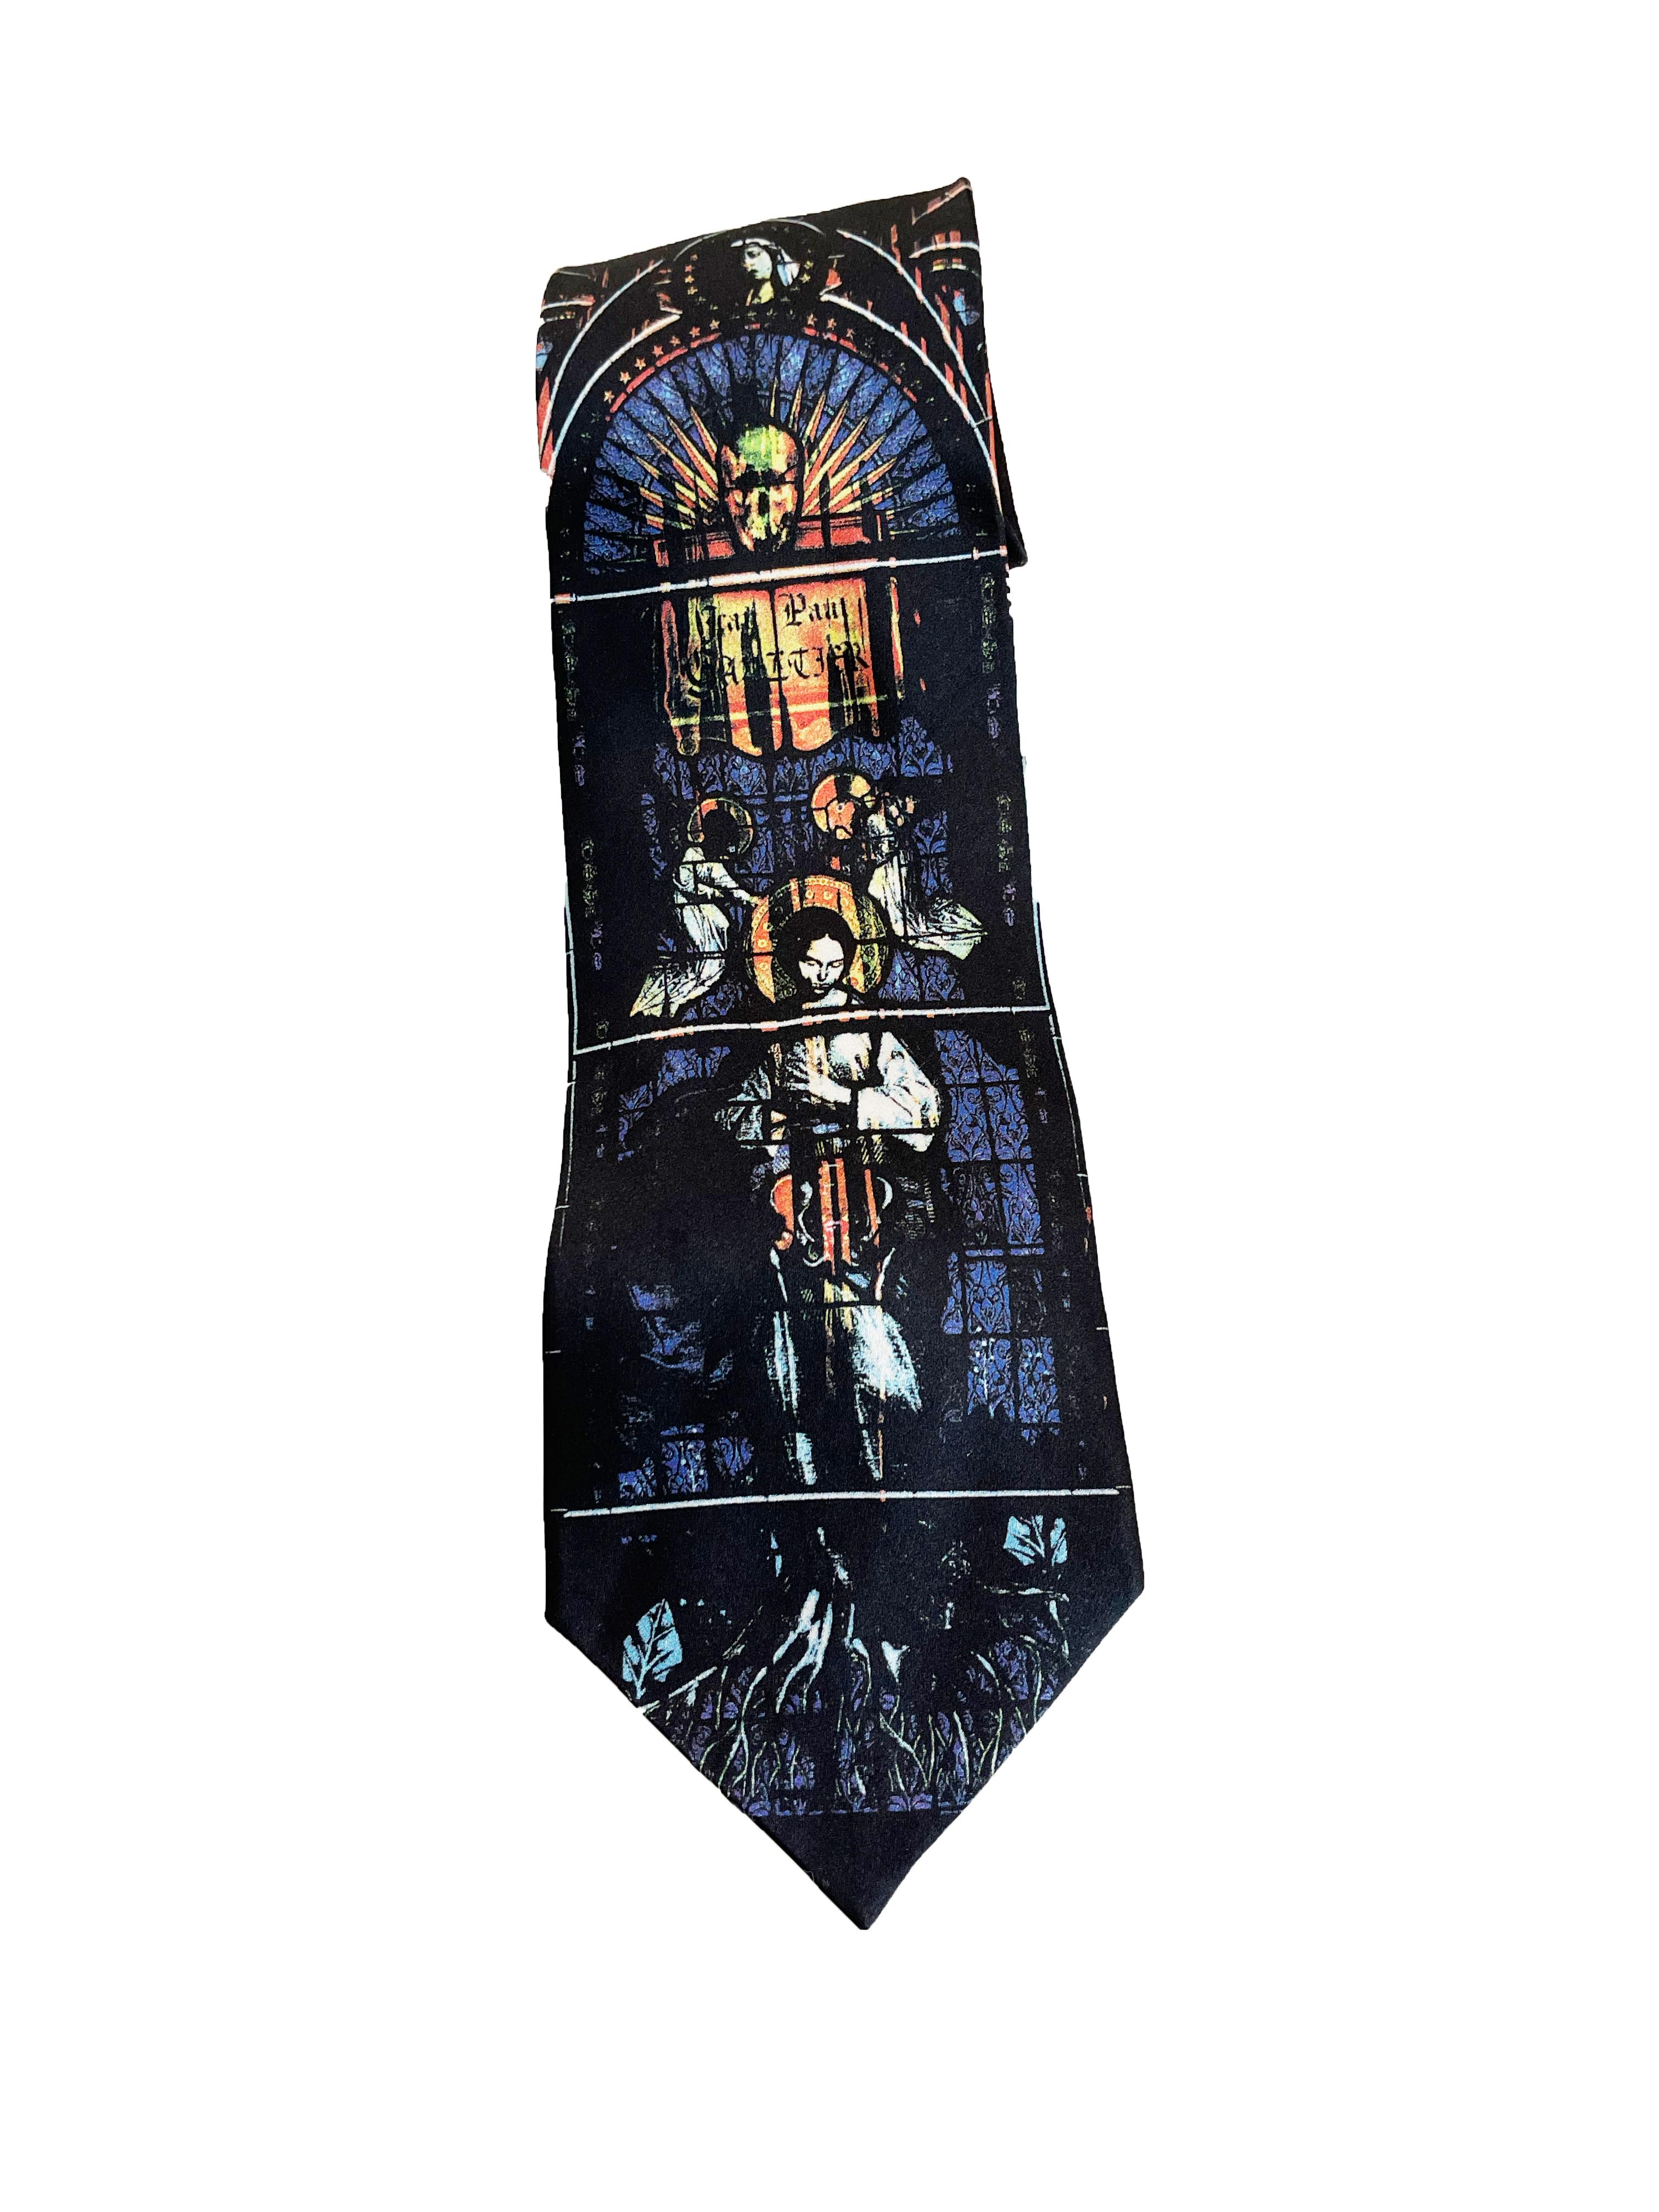 Cravate Jean Paul Gaultier en verre teinté (années 1990)
Condition : Excellent

